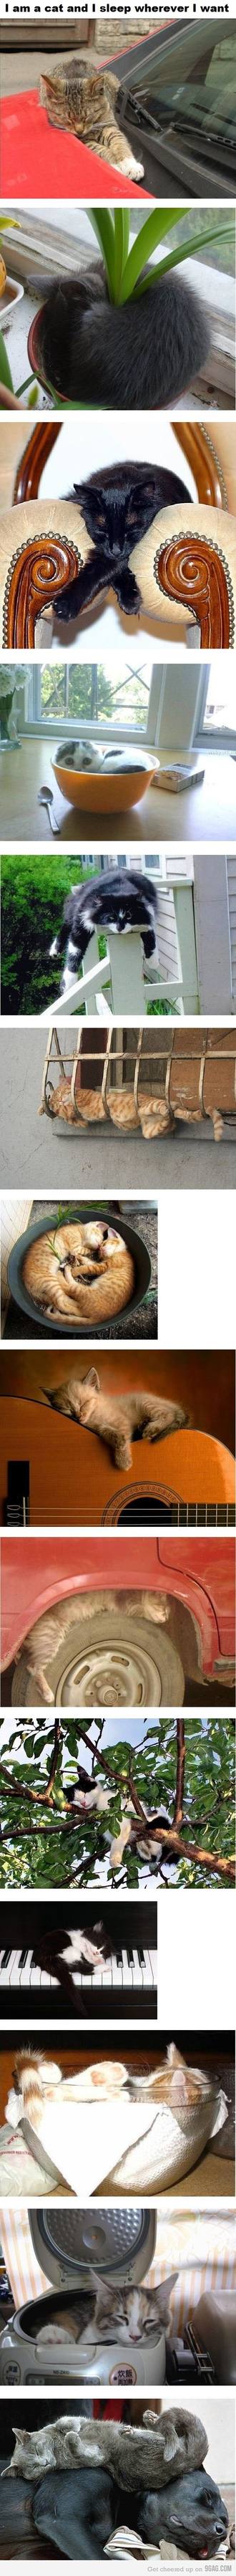 Obrázek funny kitties